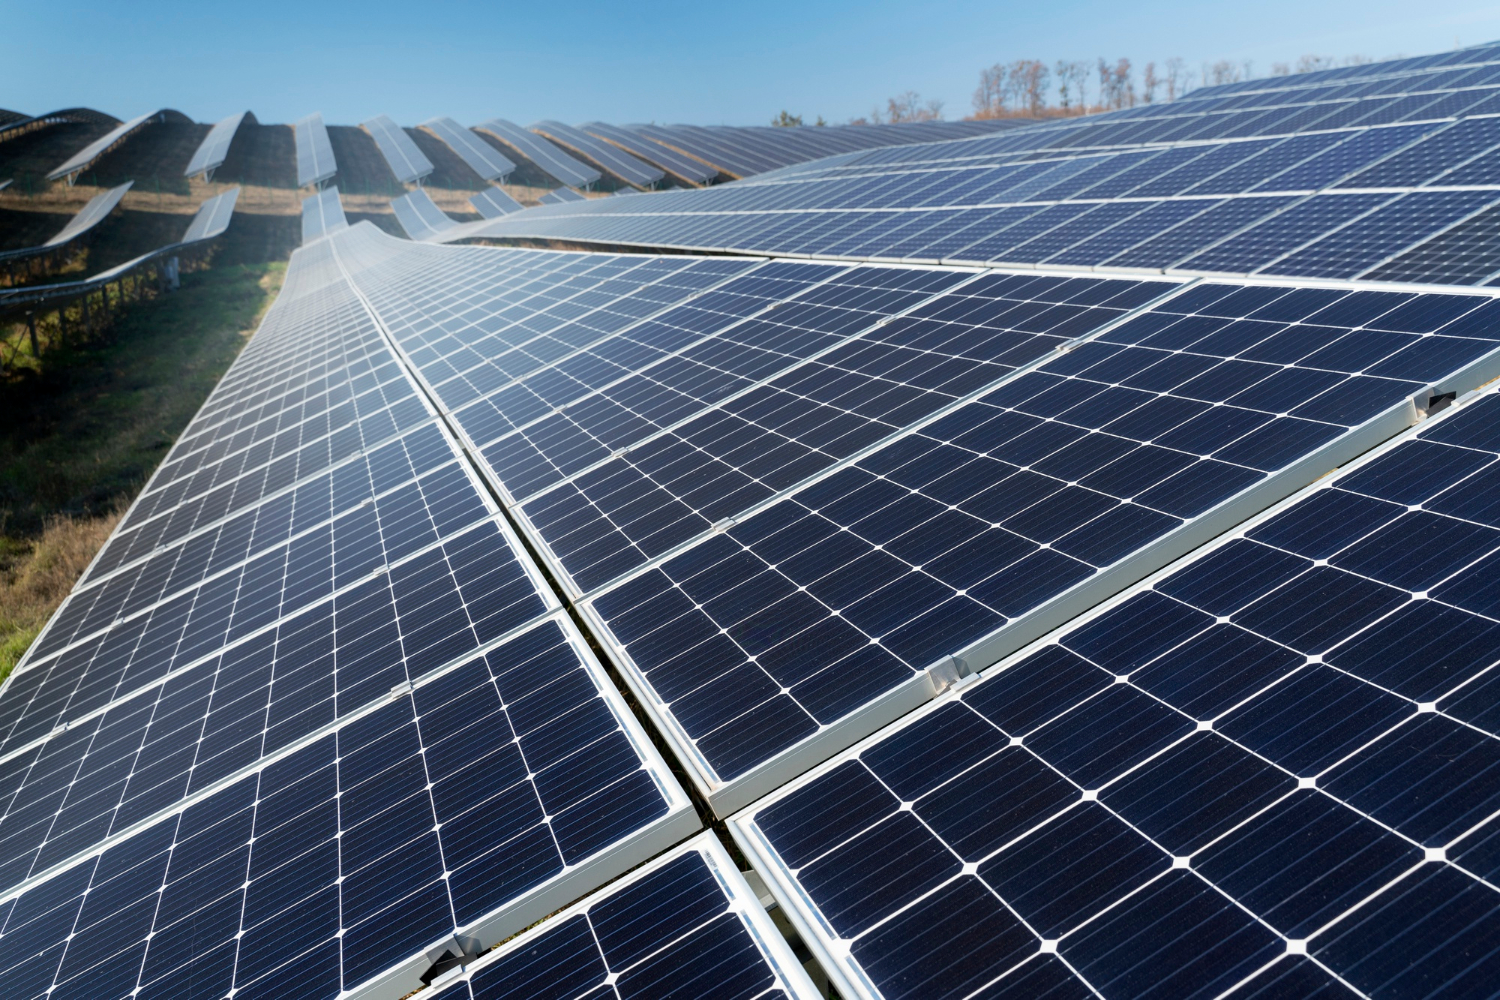 Panells solars en comunitats de veïns: Guia sobre autoconsum energètic col·lectiu